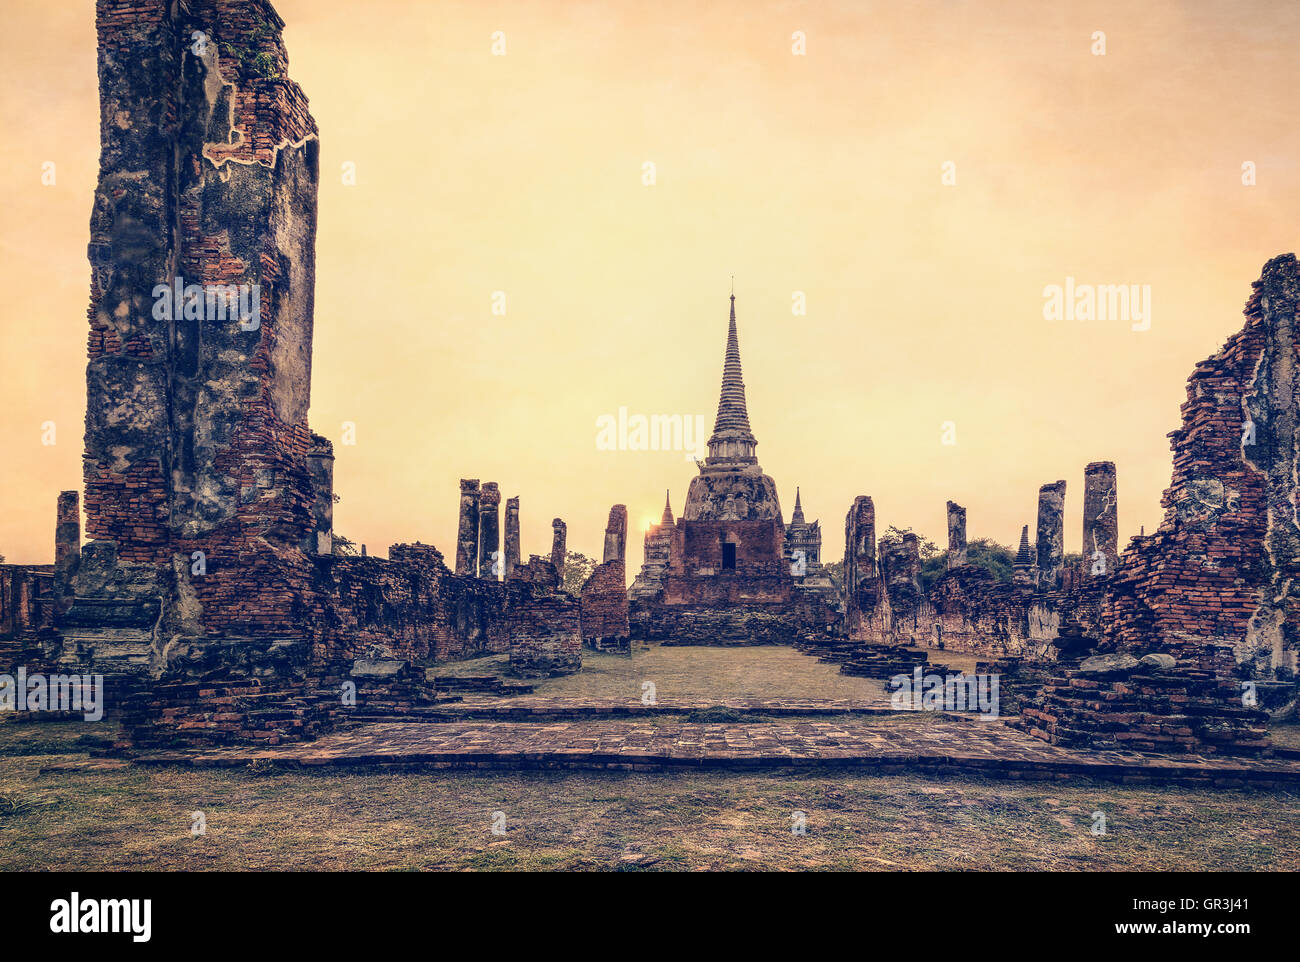 Vintage-Stil hinzufügen Textur-Effekt, antiken Ruinen und Pagode des alten Tempel Wat Phra Si Sanphet Attraktionen während des Sonnenuntergangs Stockfoto